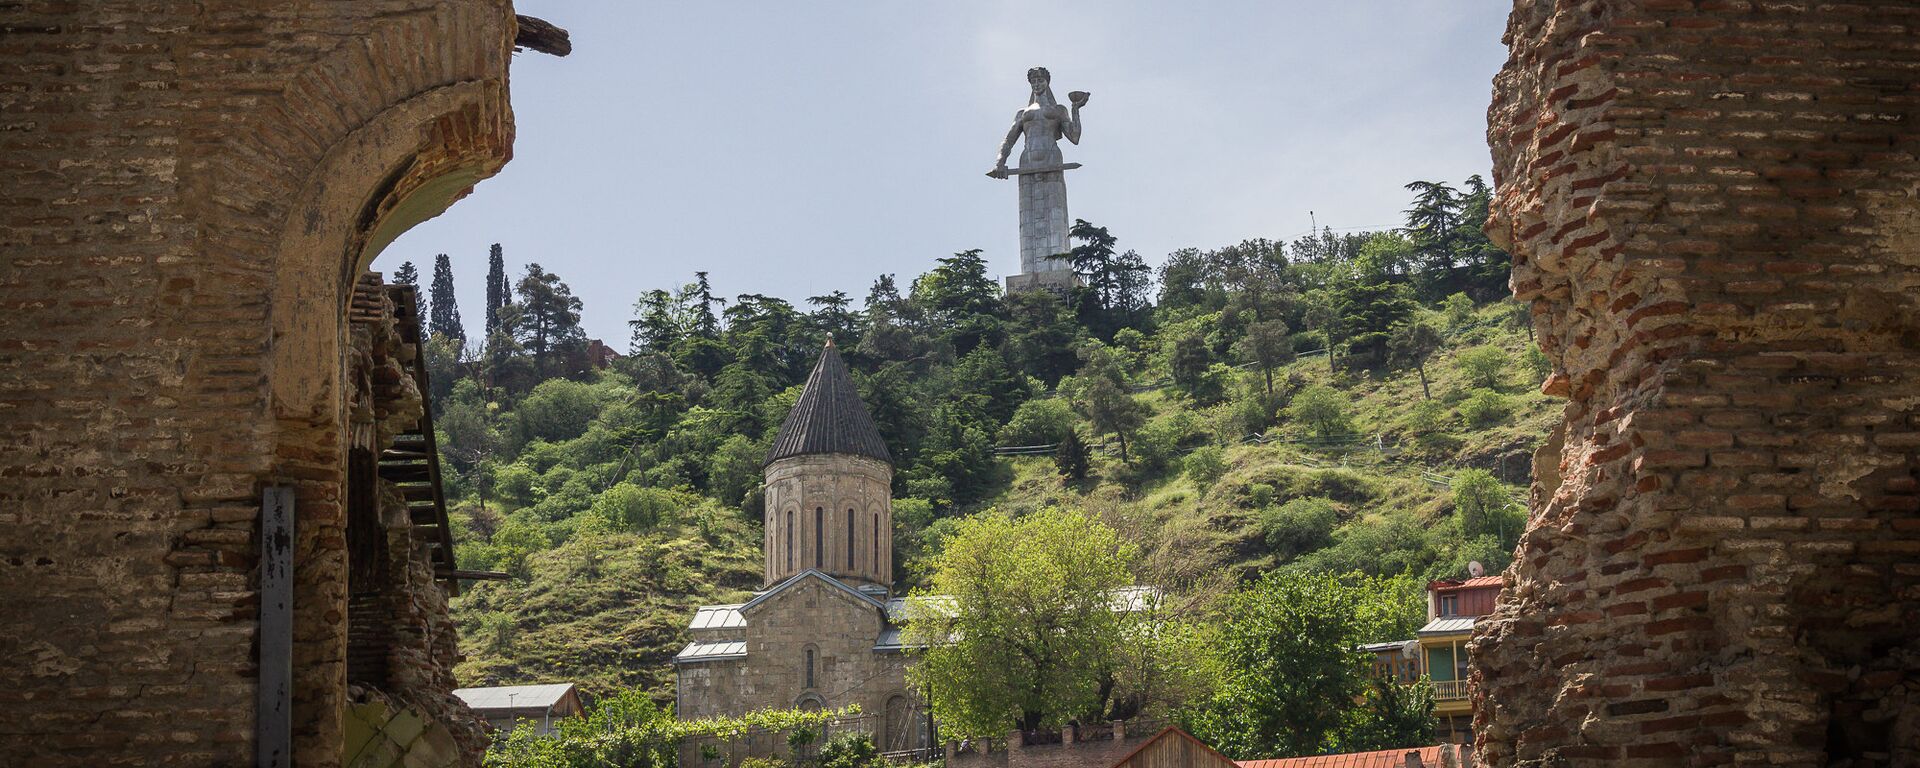 Вид на монумент Мать Грузии со старого района Тбилиси - Сололаки - в солнечный день - Sputnik Грузия, 1920, 30.01.2021